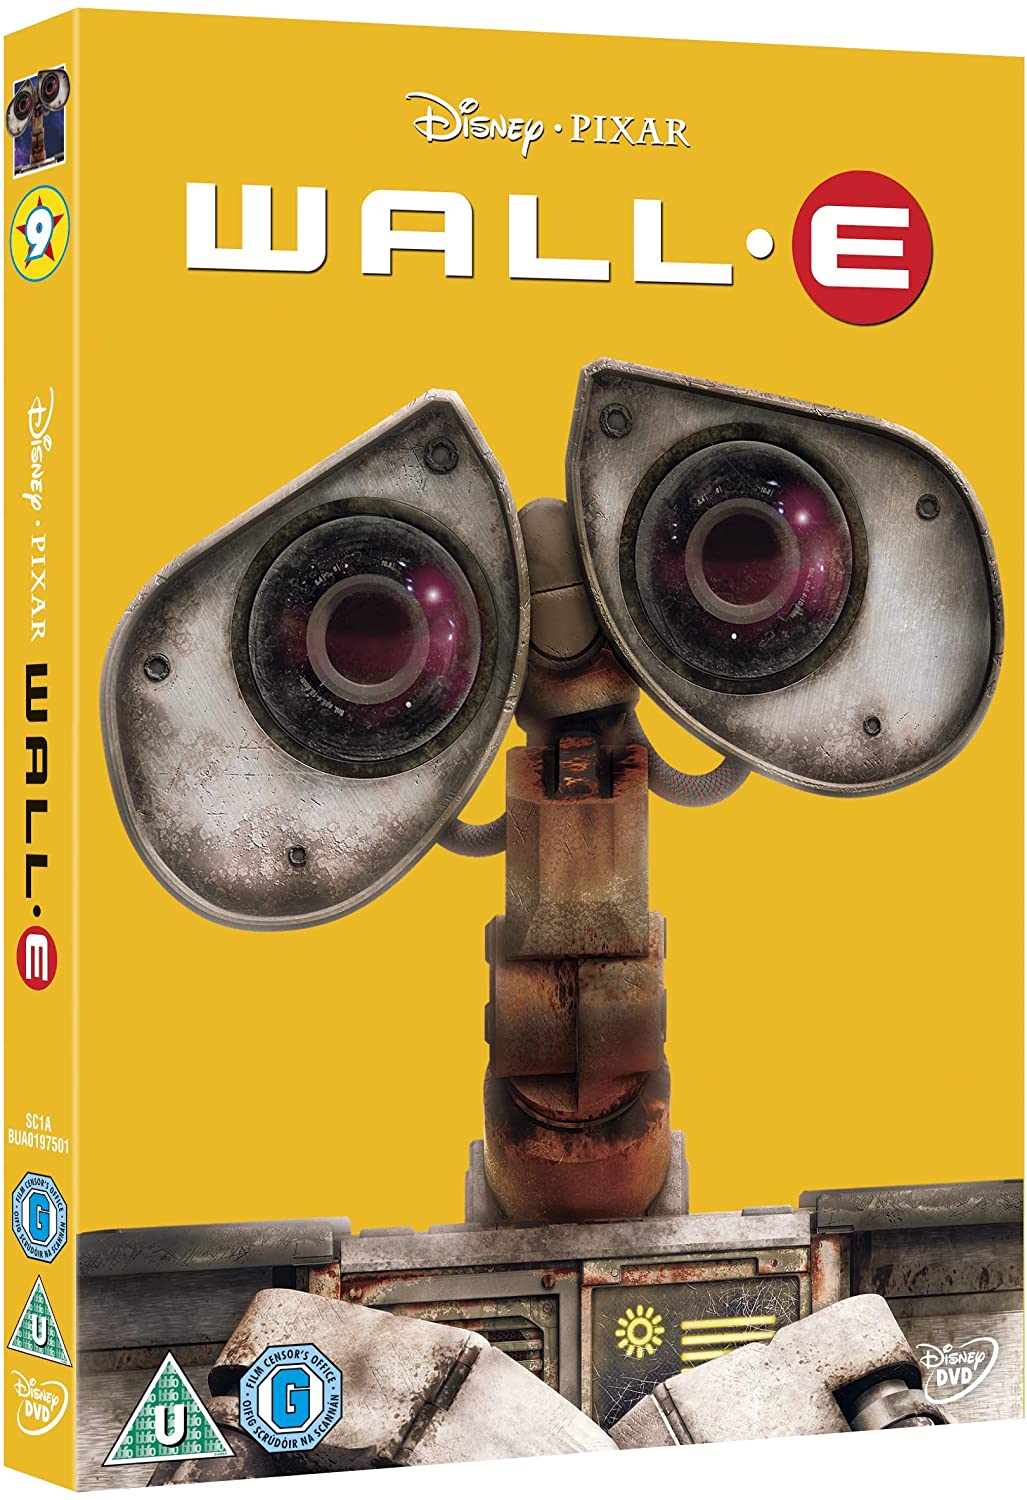 Wall-E [DVD] [2008]